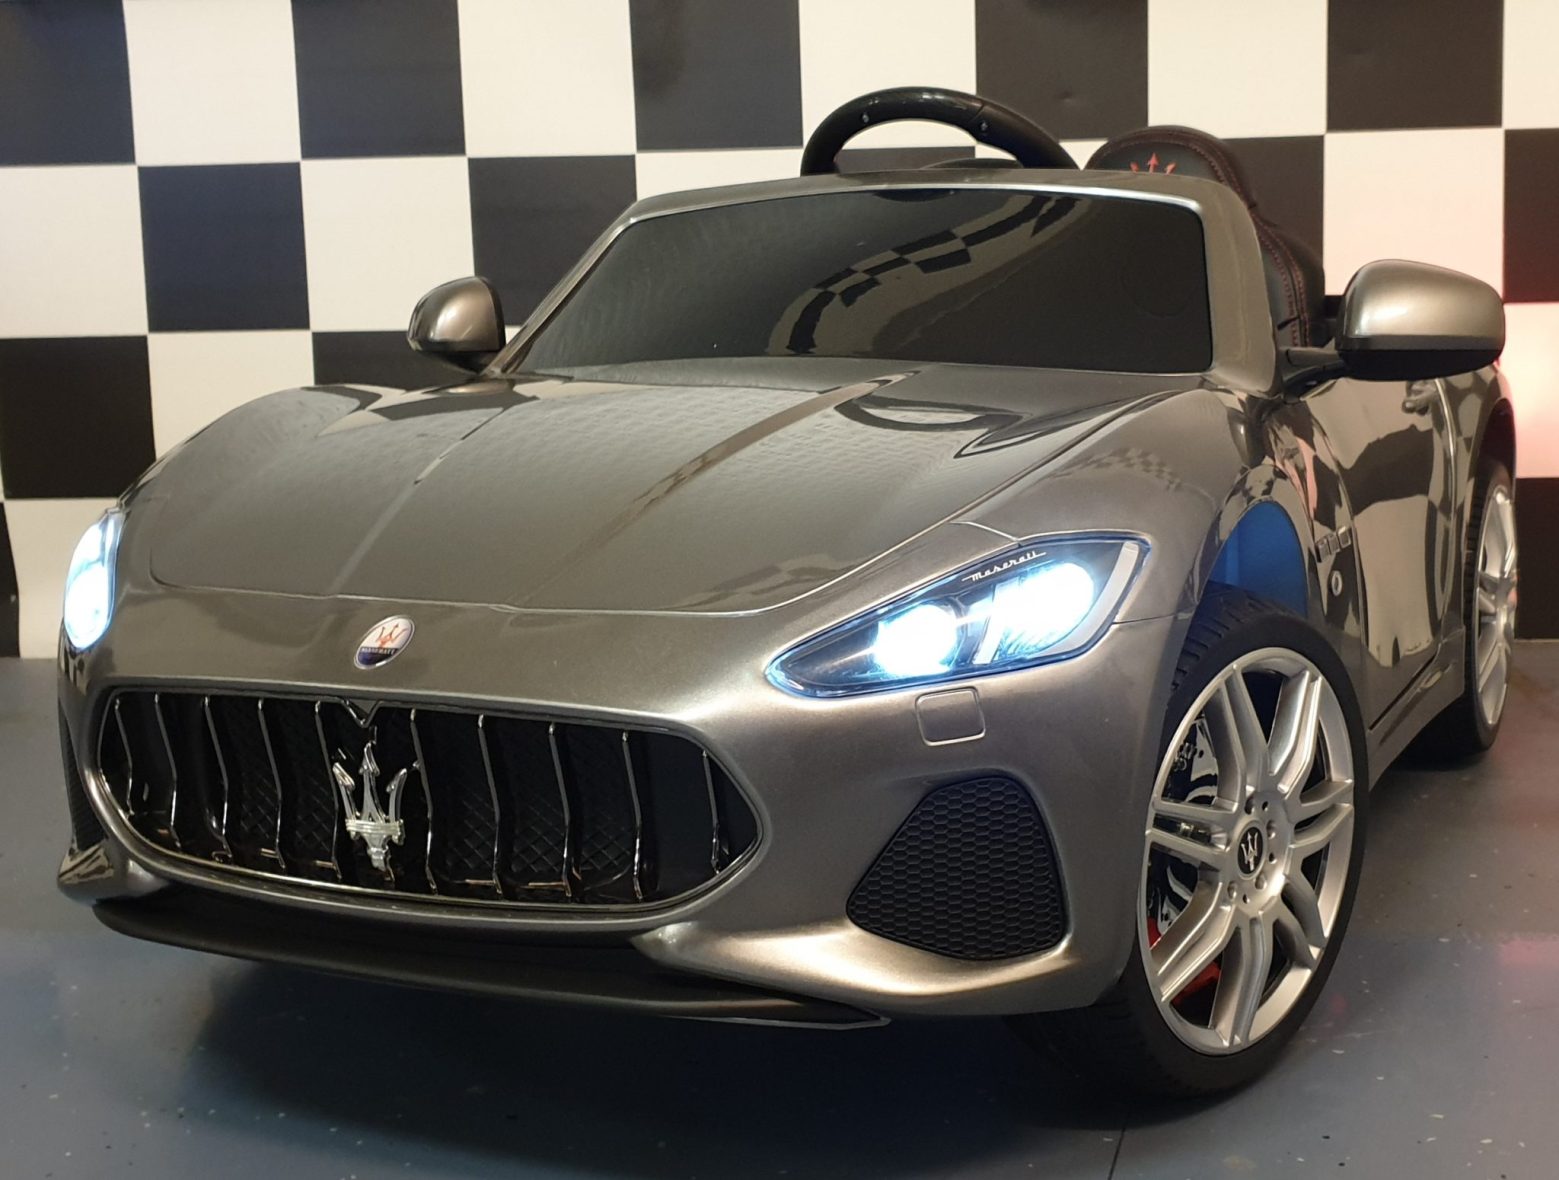 Maserati Grand Cabrio Battery Children’s Car 12 v Metallic Gray